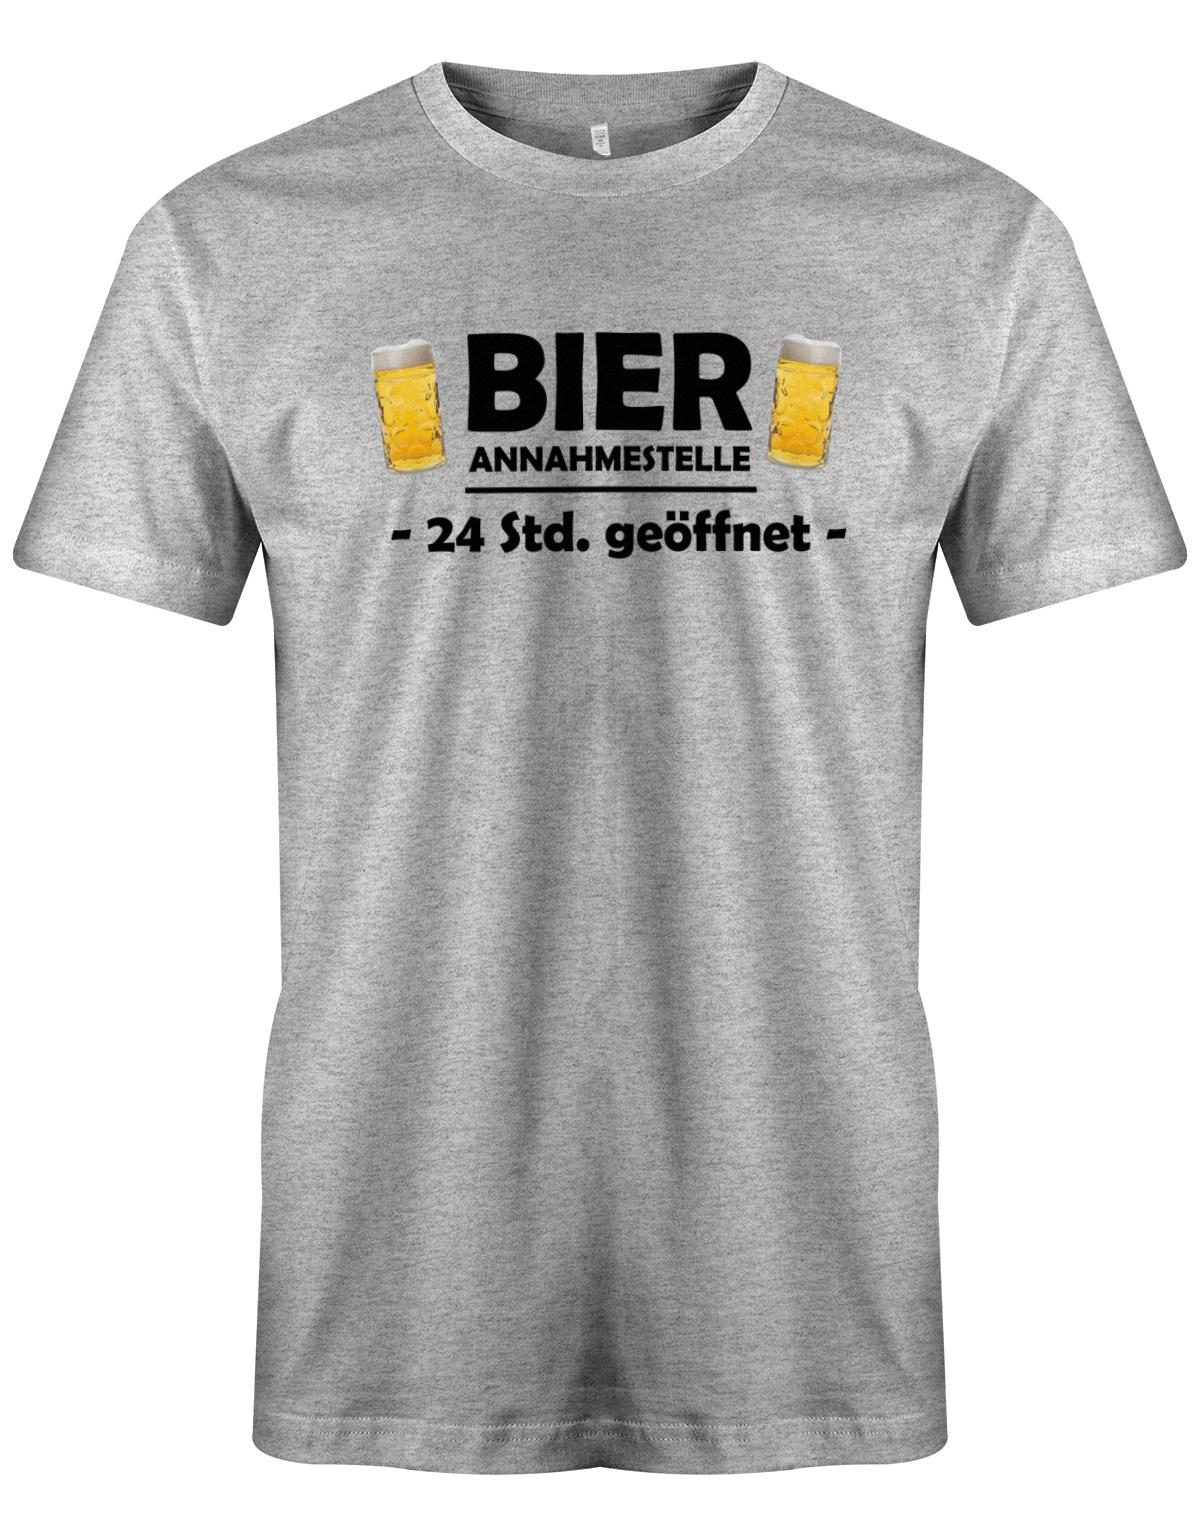 Bier-Annahmestelle-Herren-Shirt-Grau